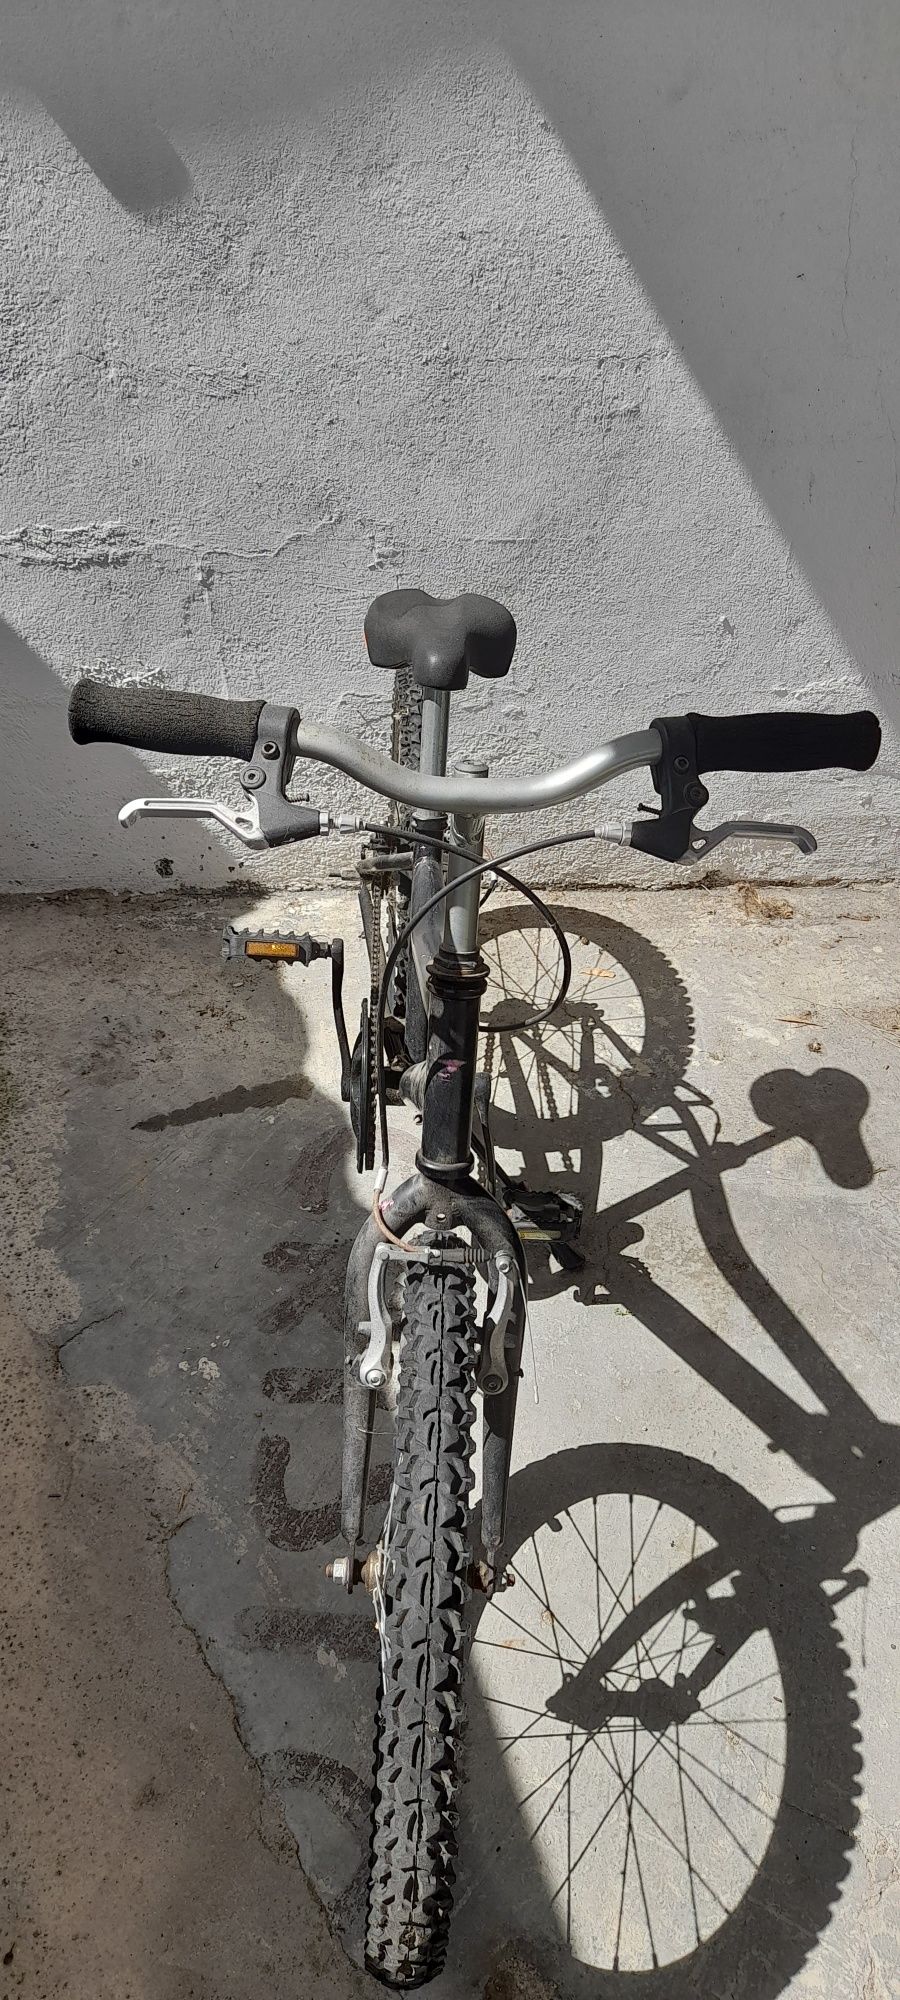 Bicicleta aro 20